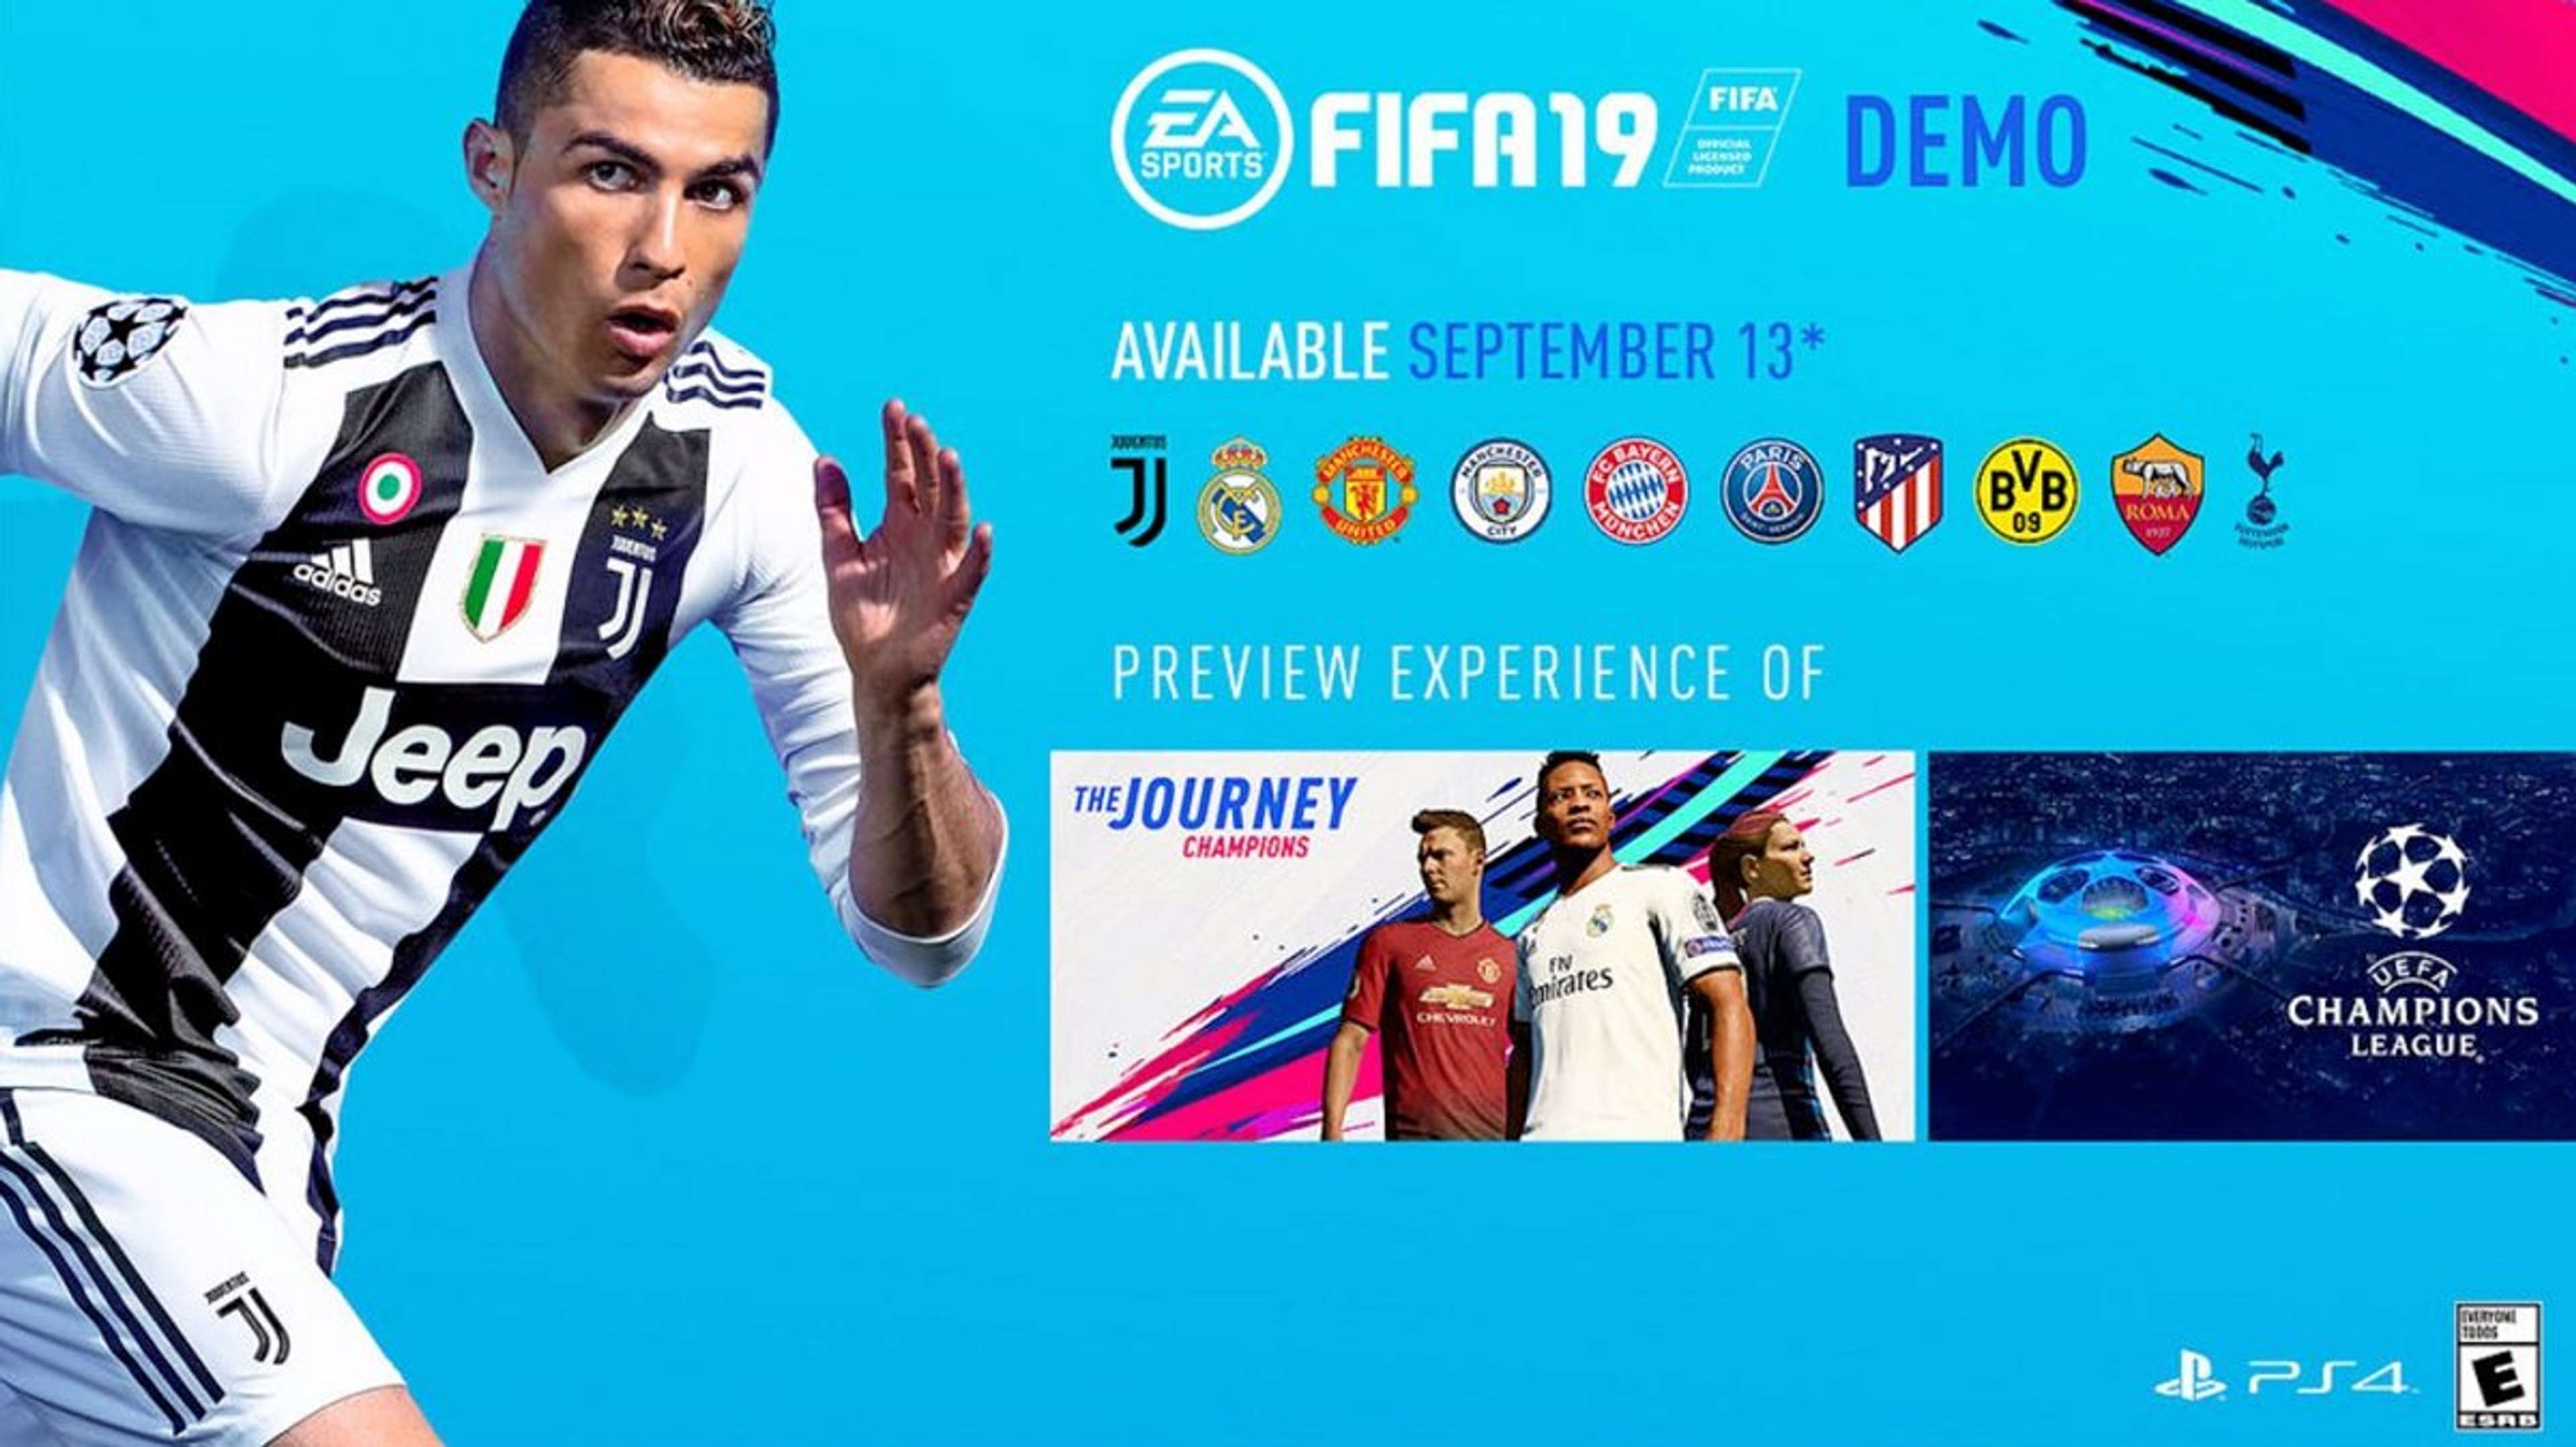 Demo FIFA 19